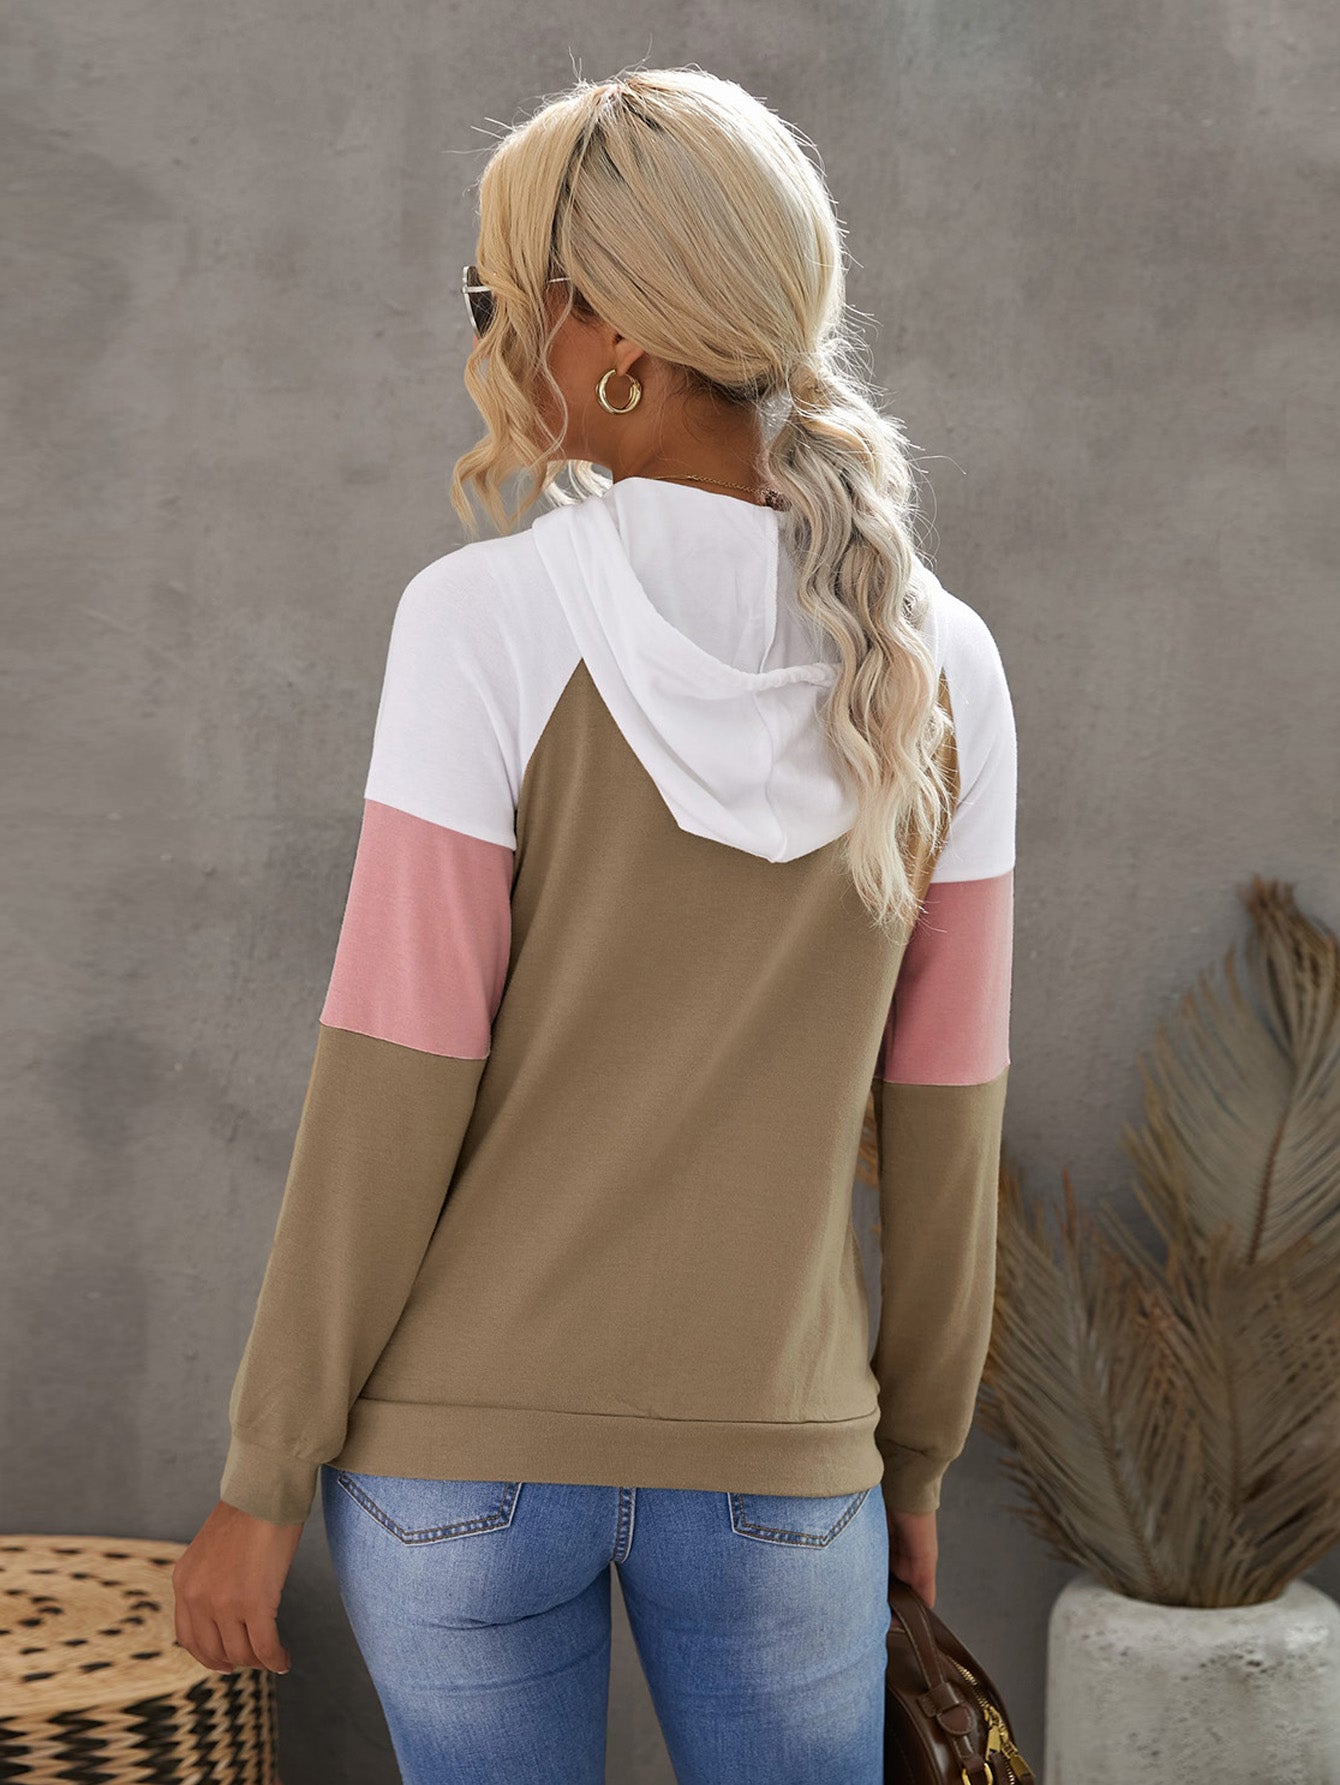 Women's Casual Fashion Color Block Shirt Zipper Hooded Top Sai Feel